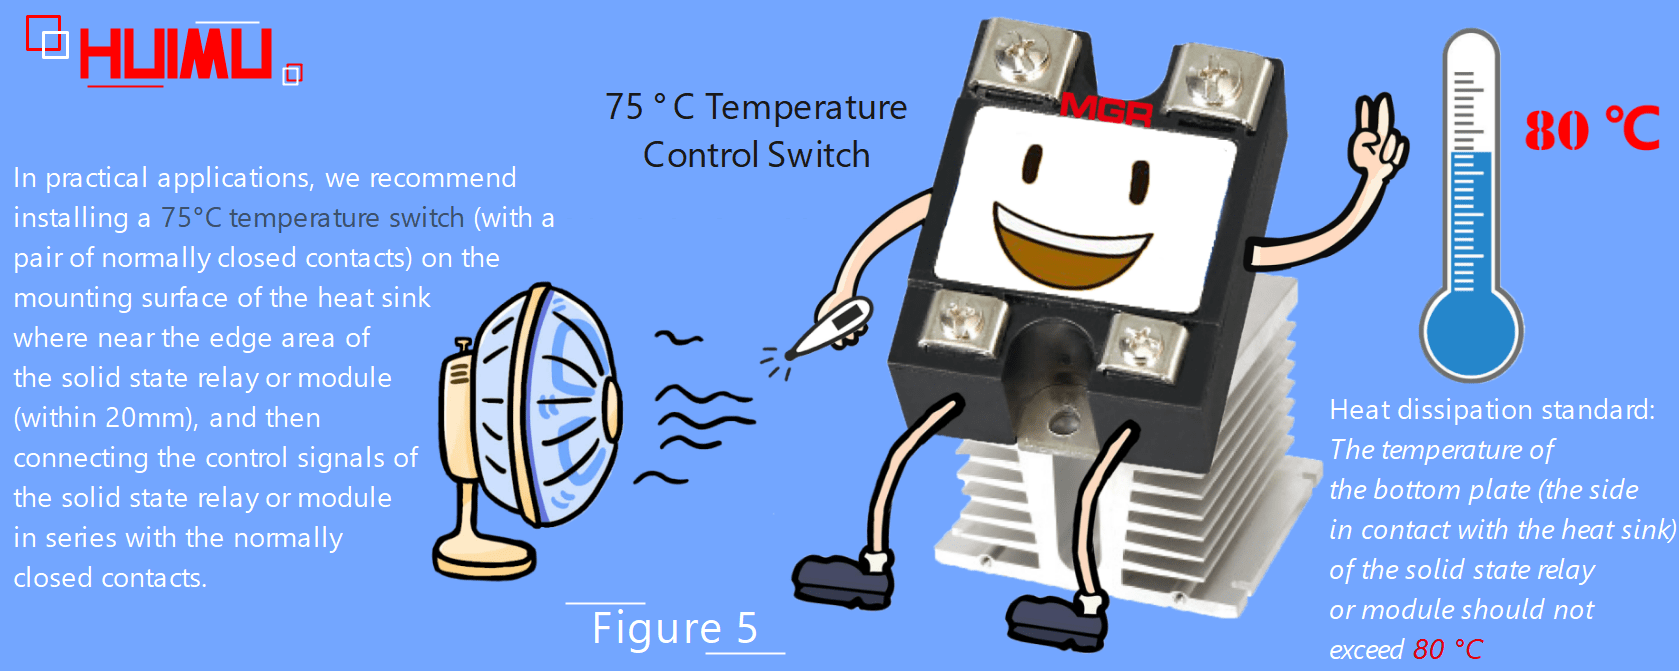 75°C temperature switch